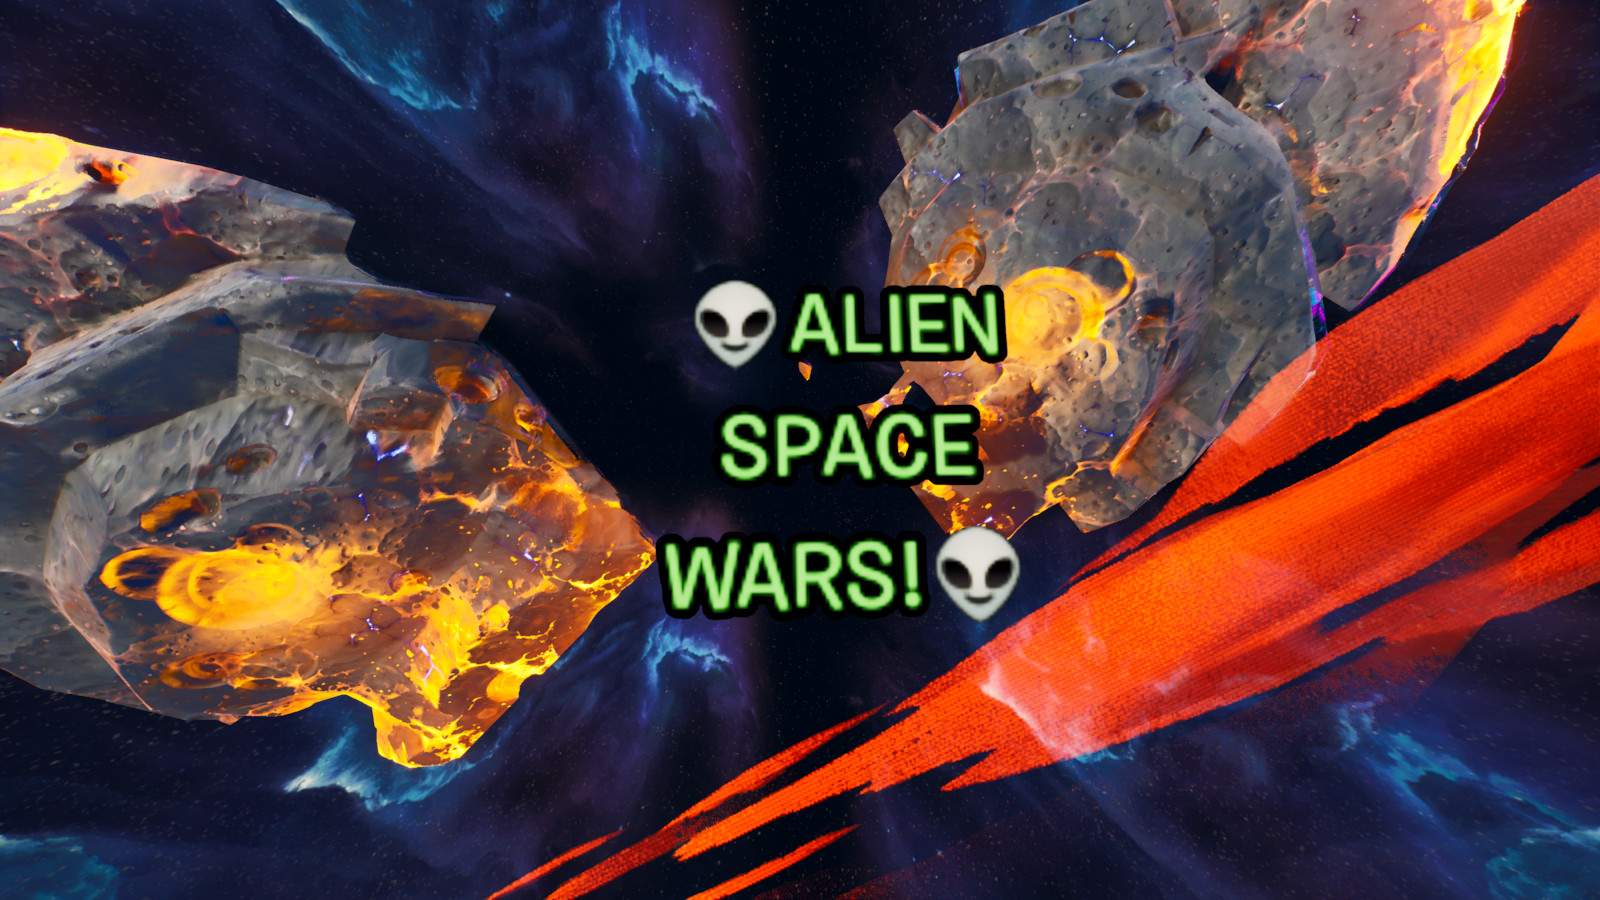 👽ALIEN SPACE WARS!